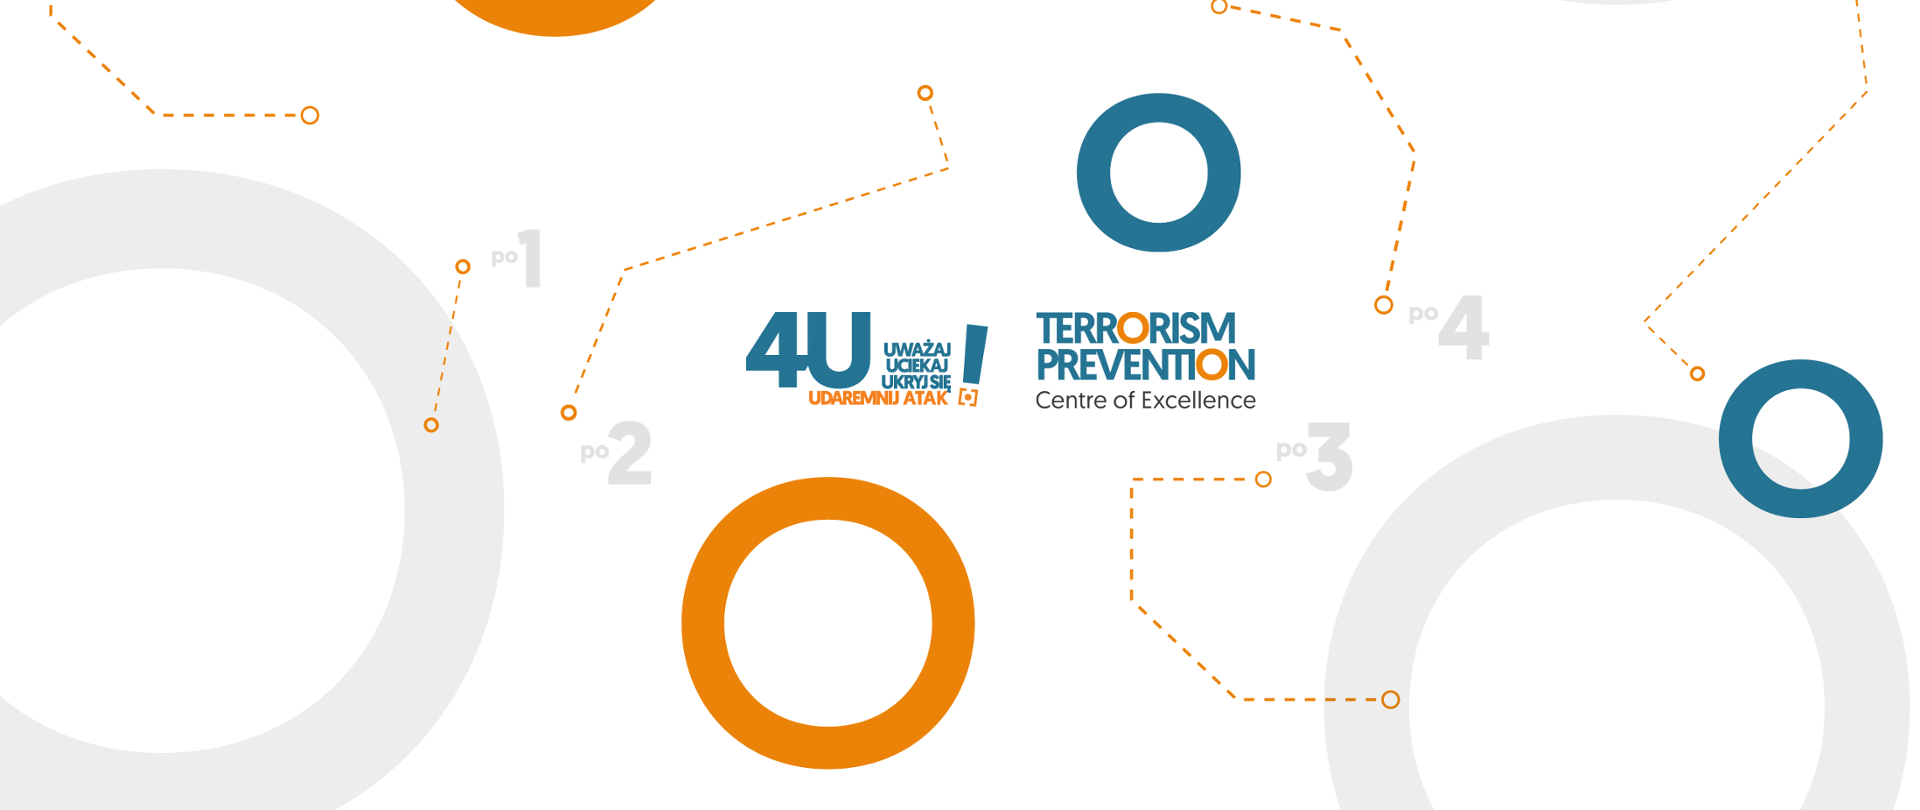 Zapraszamy do zapoznania się ze stroną internetową kampanii społecznej 4U! (www.4u.tpcoe.gov.pl), na której znajdują się film oraz animacje edukacyjne przedstawiające sposób właściwego zachowania się w przypadku wystąpienia ataku terrorystycznego.